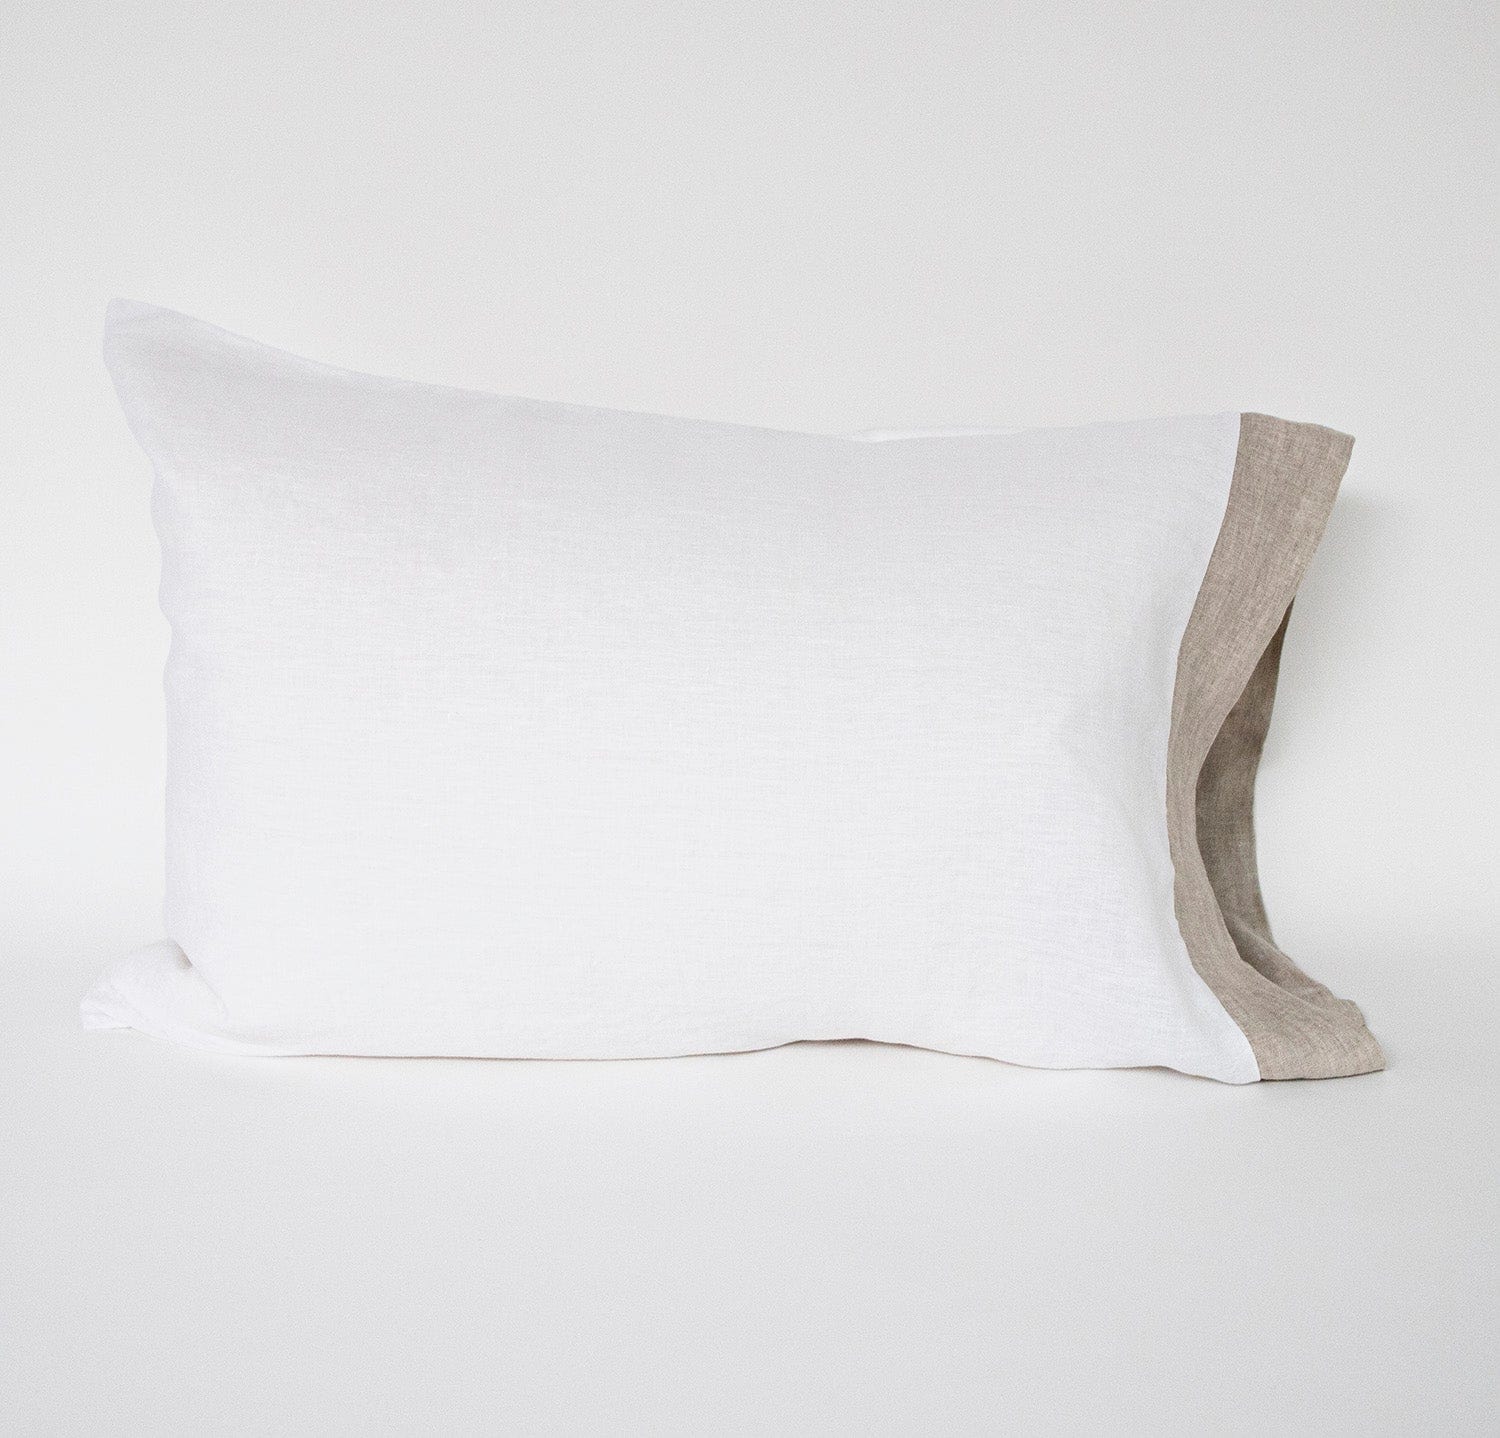 Rough Linen | King Smooth Bordered Linen Pillowcase | Natural Border